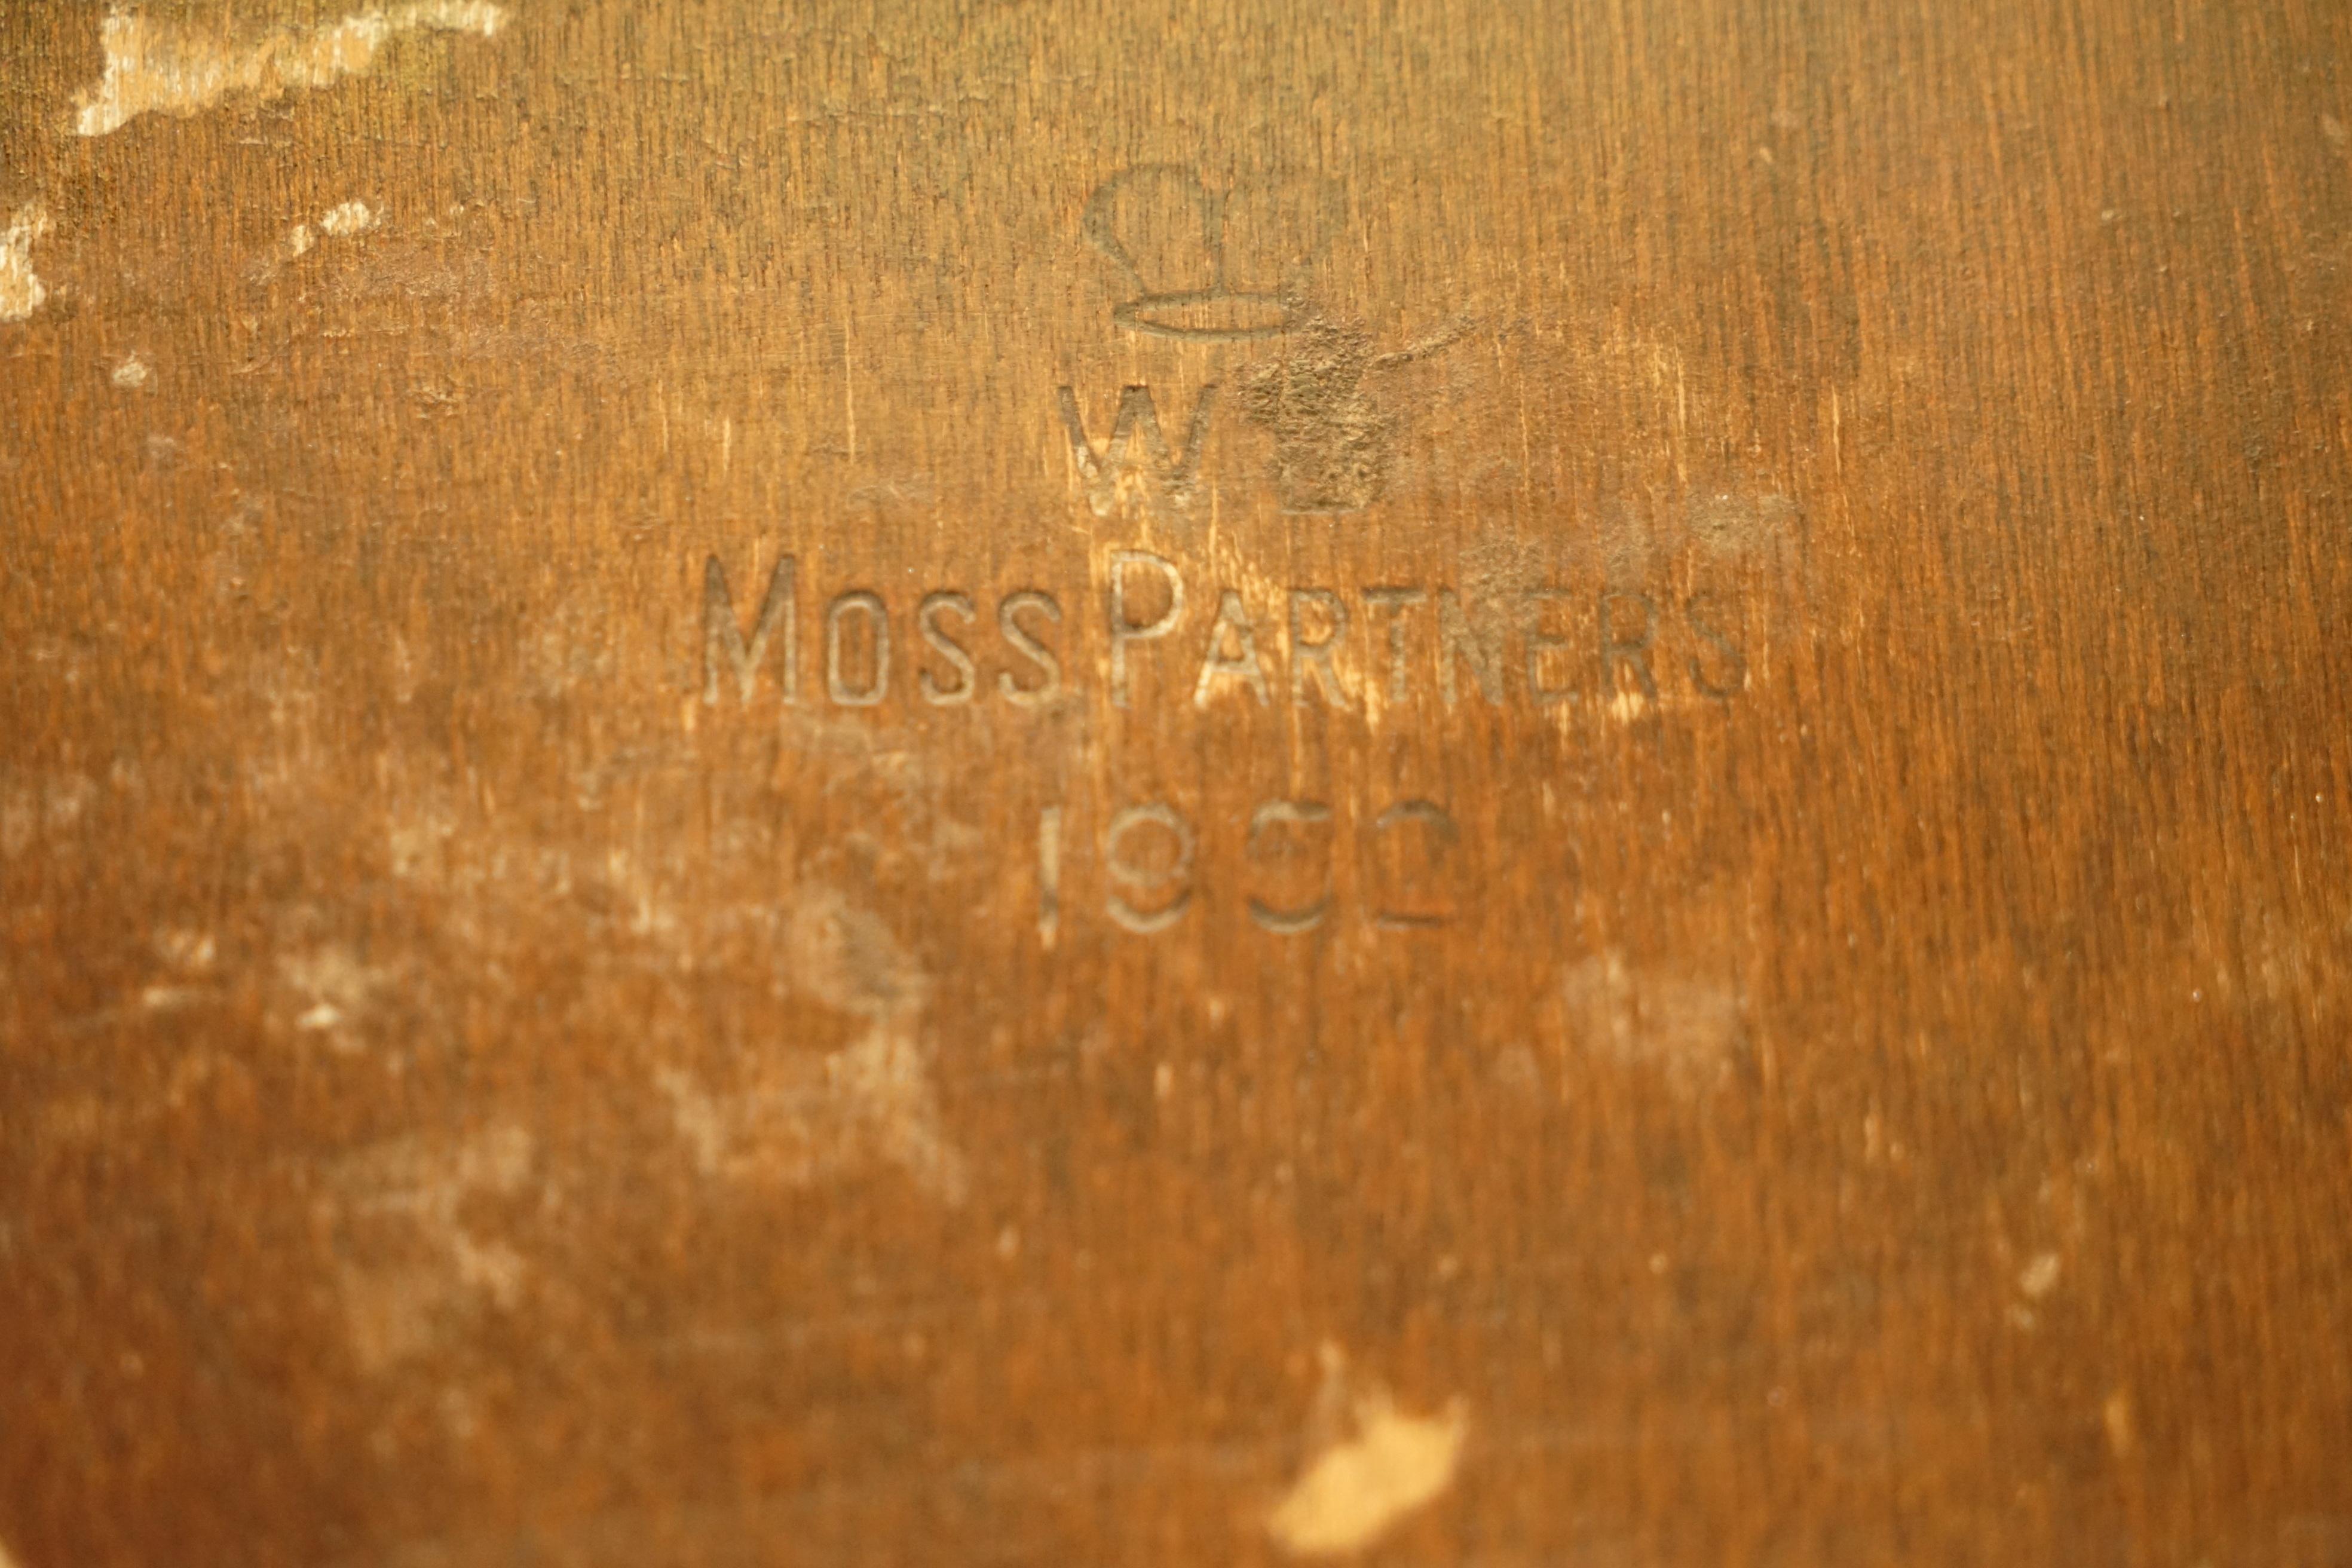 Nous sommes ravis d'offrir à la vente cette superbe table à vin originale Moss Partners 1952, entièrement estampillée, qui fait partie d'une suite.

Il s'agit d'une table d'appoint très bien faite, elle est haute et fonctionne mieux dans un